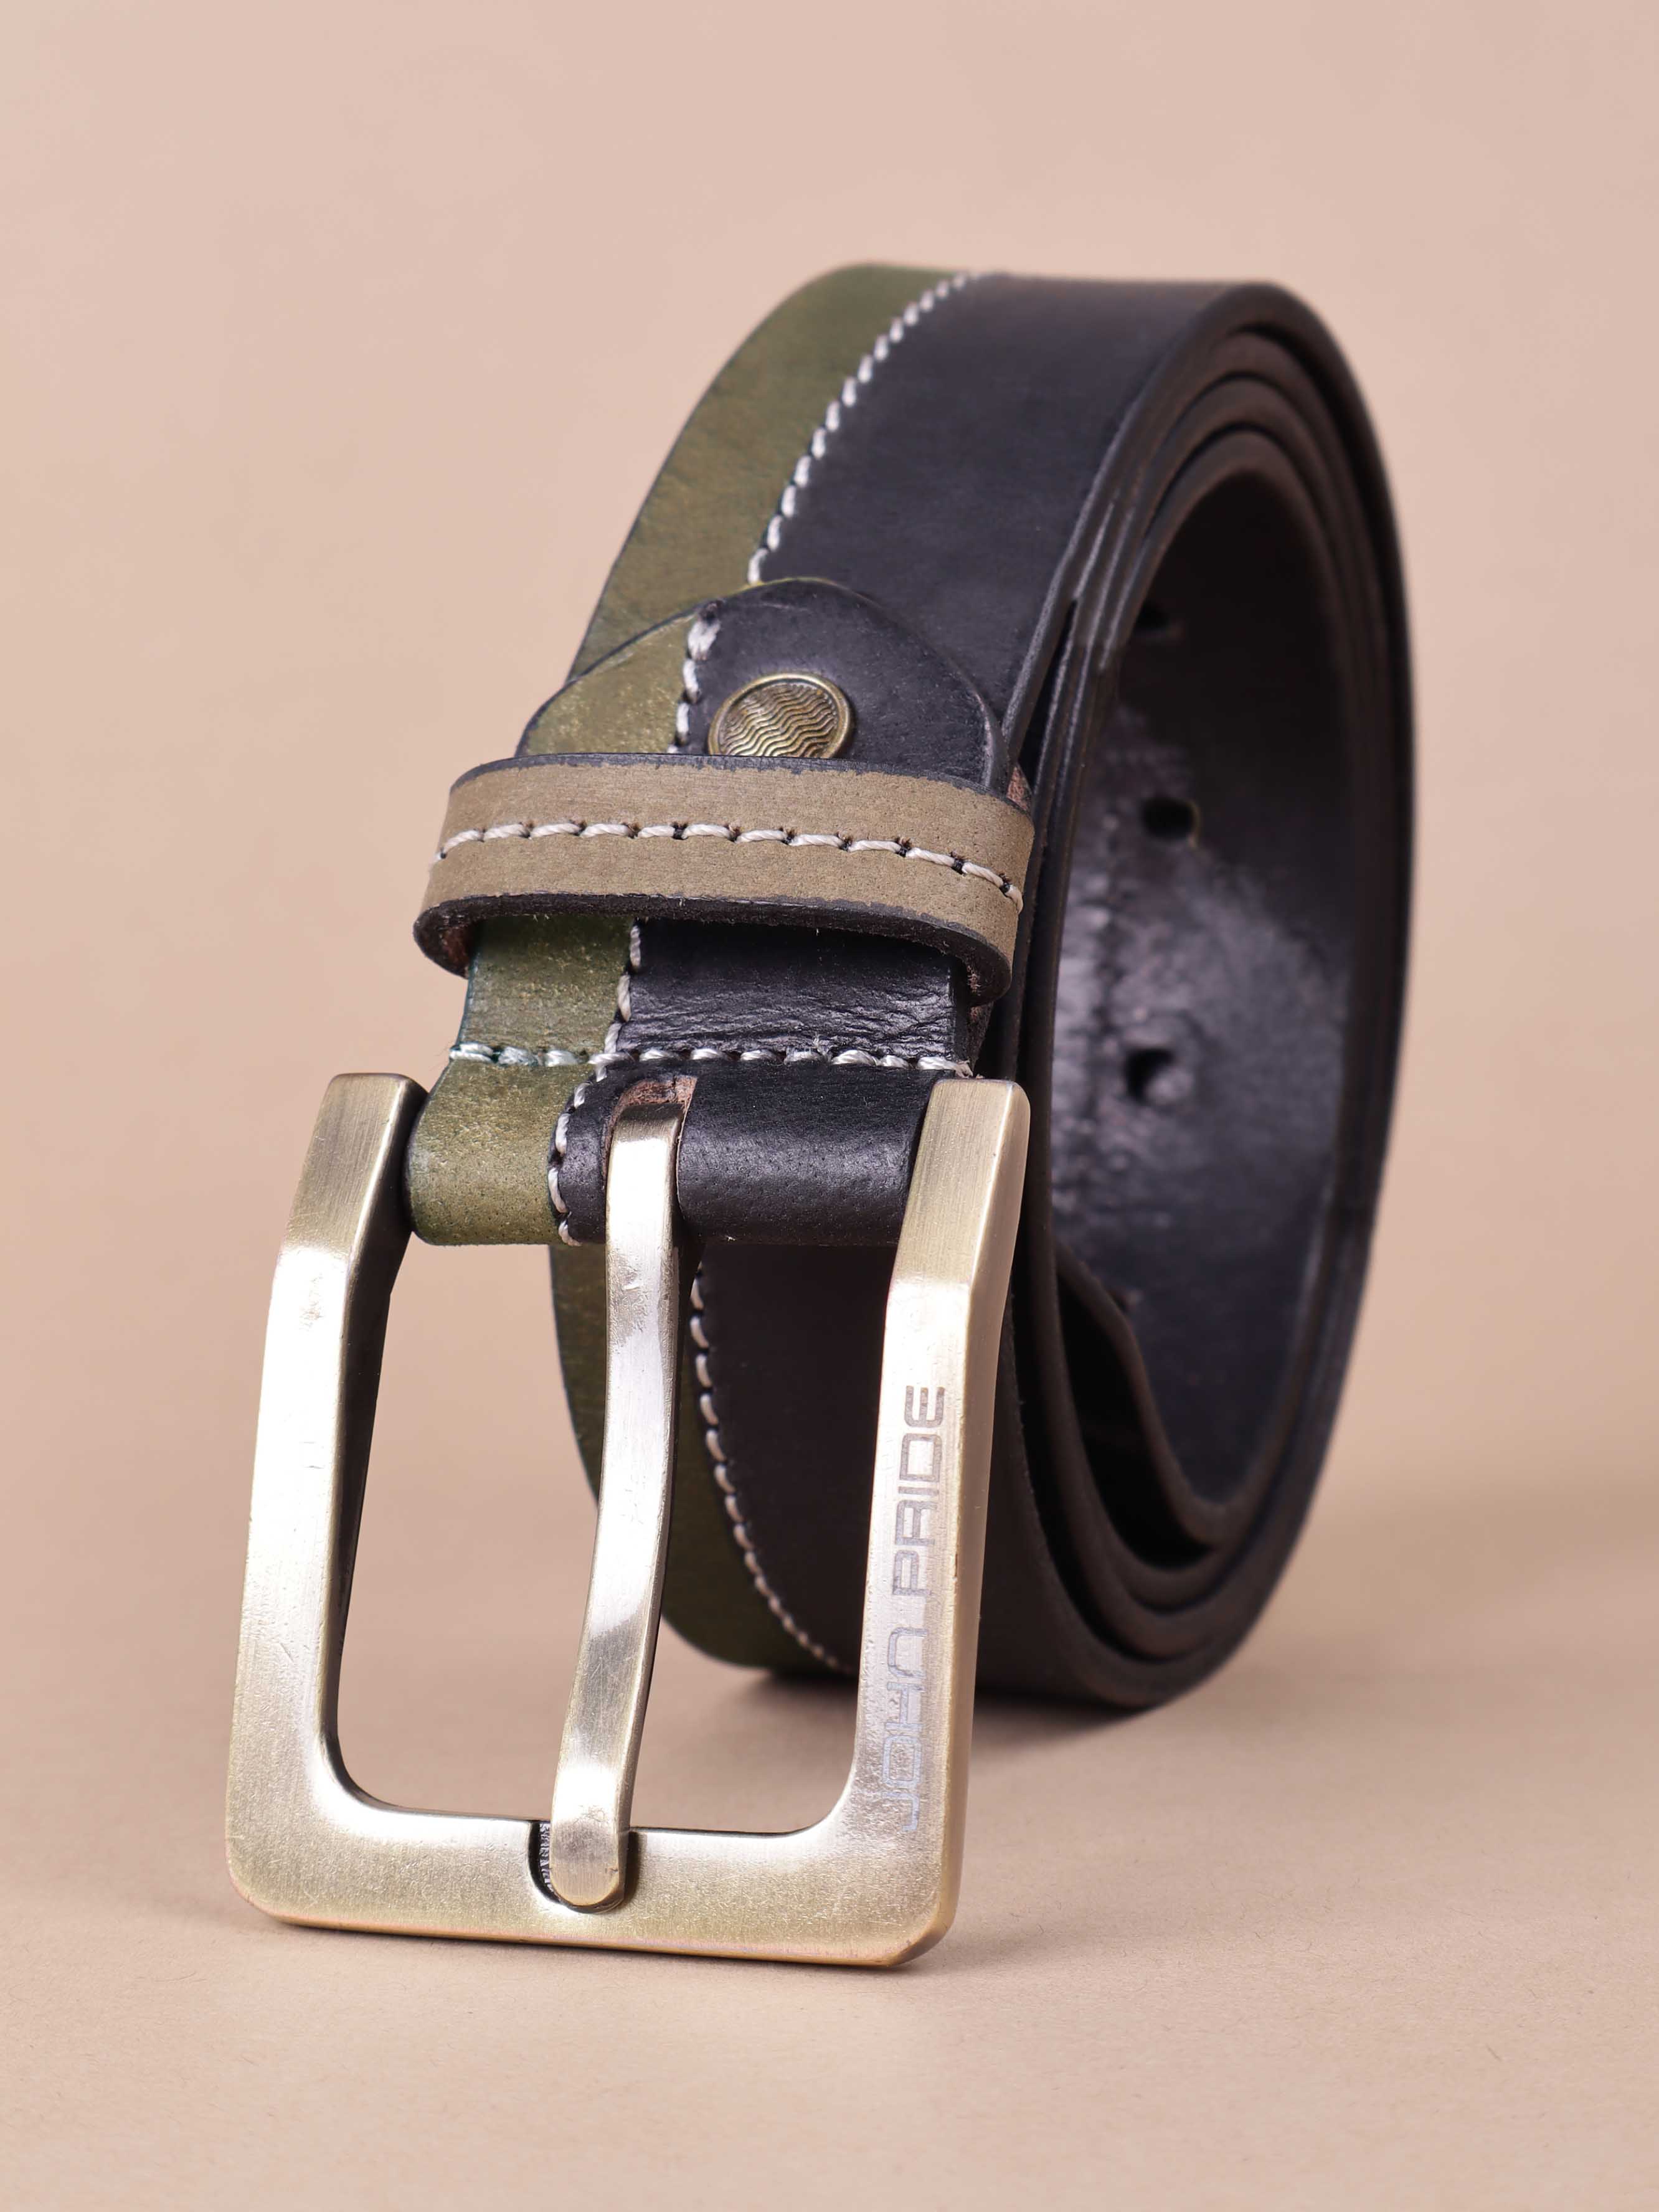 accessories/belts/JPBT1004/jpbt1004-5.jpg